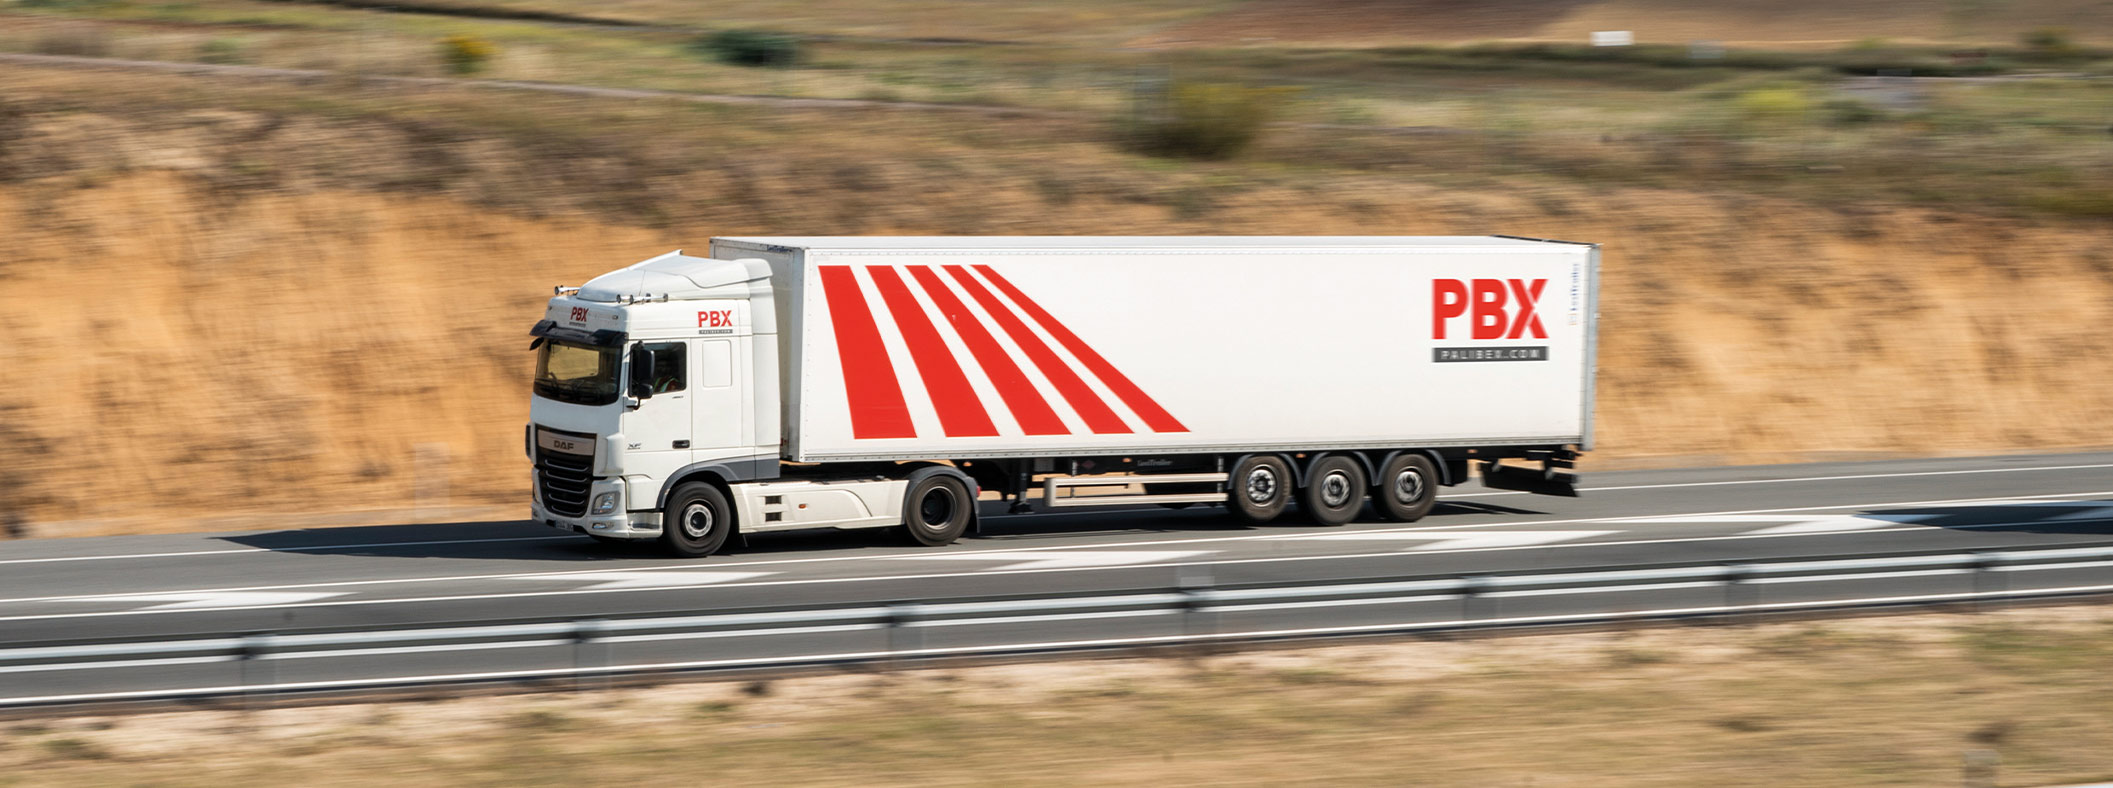 transportar pale francia - palibex - servicios internacionales transporte pales